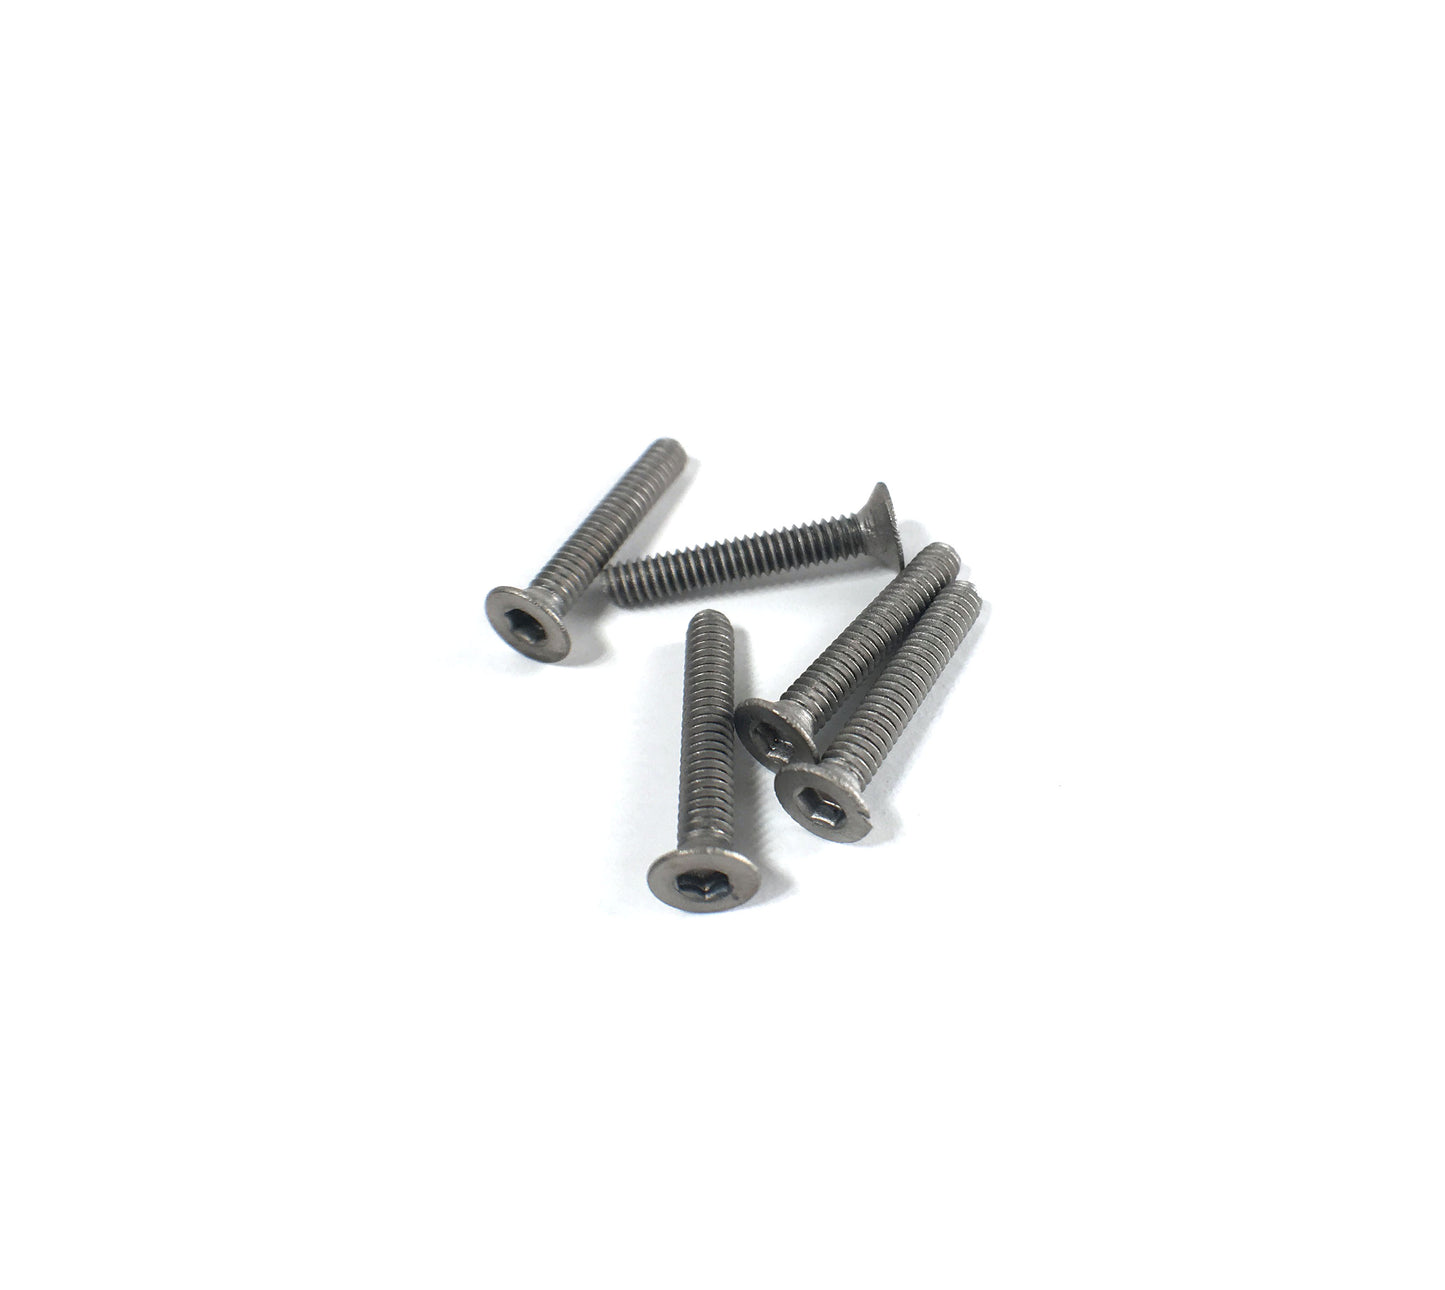 Titanium 2 x 12mm Machine Countersunk Head Screw (5 pcs)